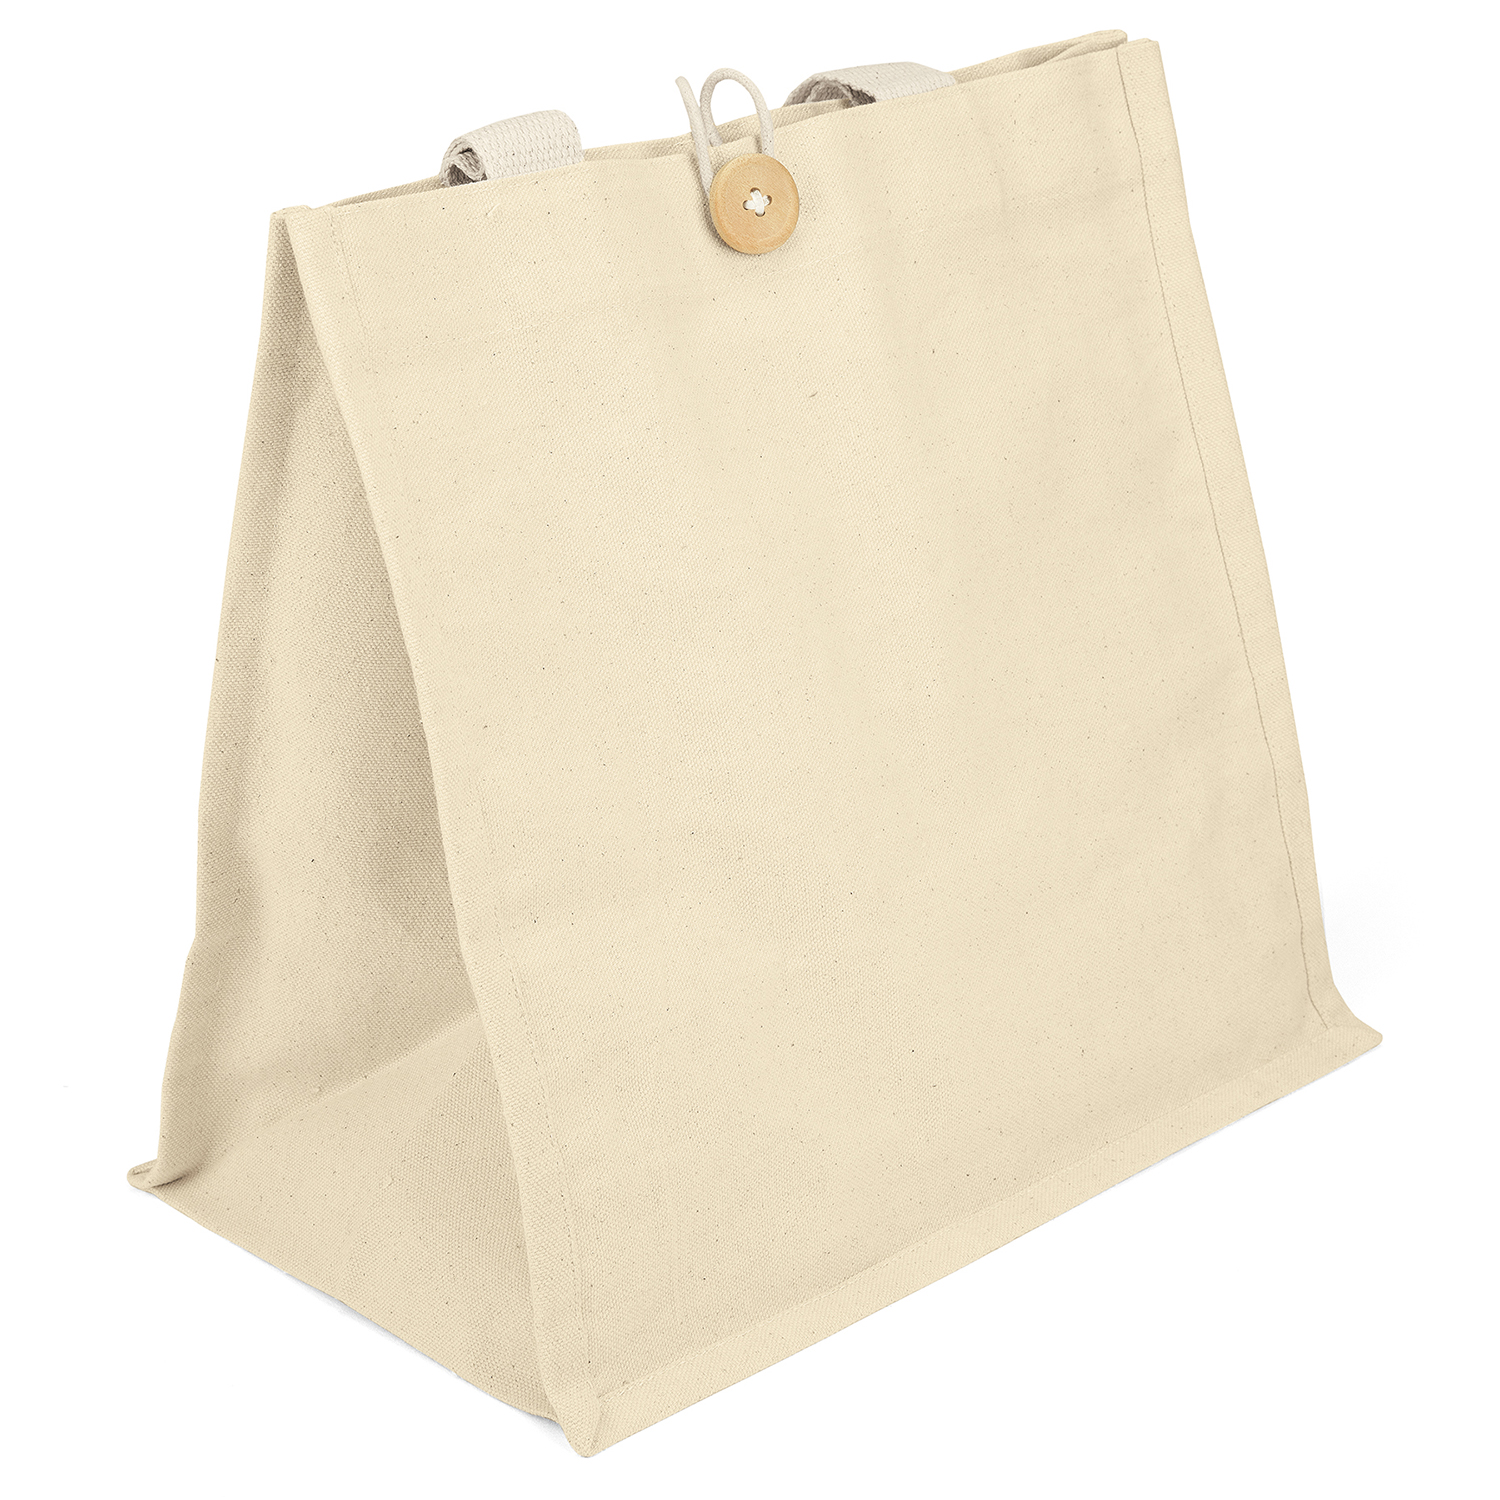 Bag Makers SPAU1313 - Custom Printed Reusable Tote Bag